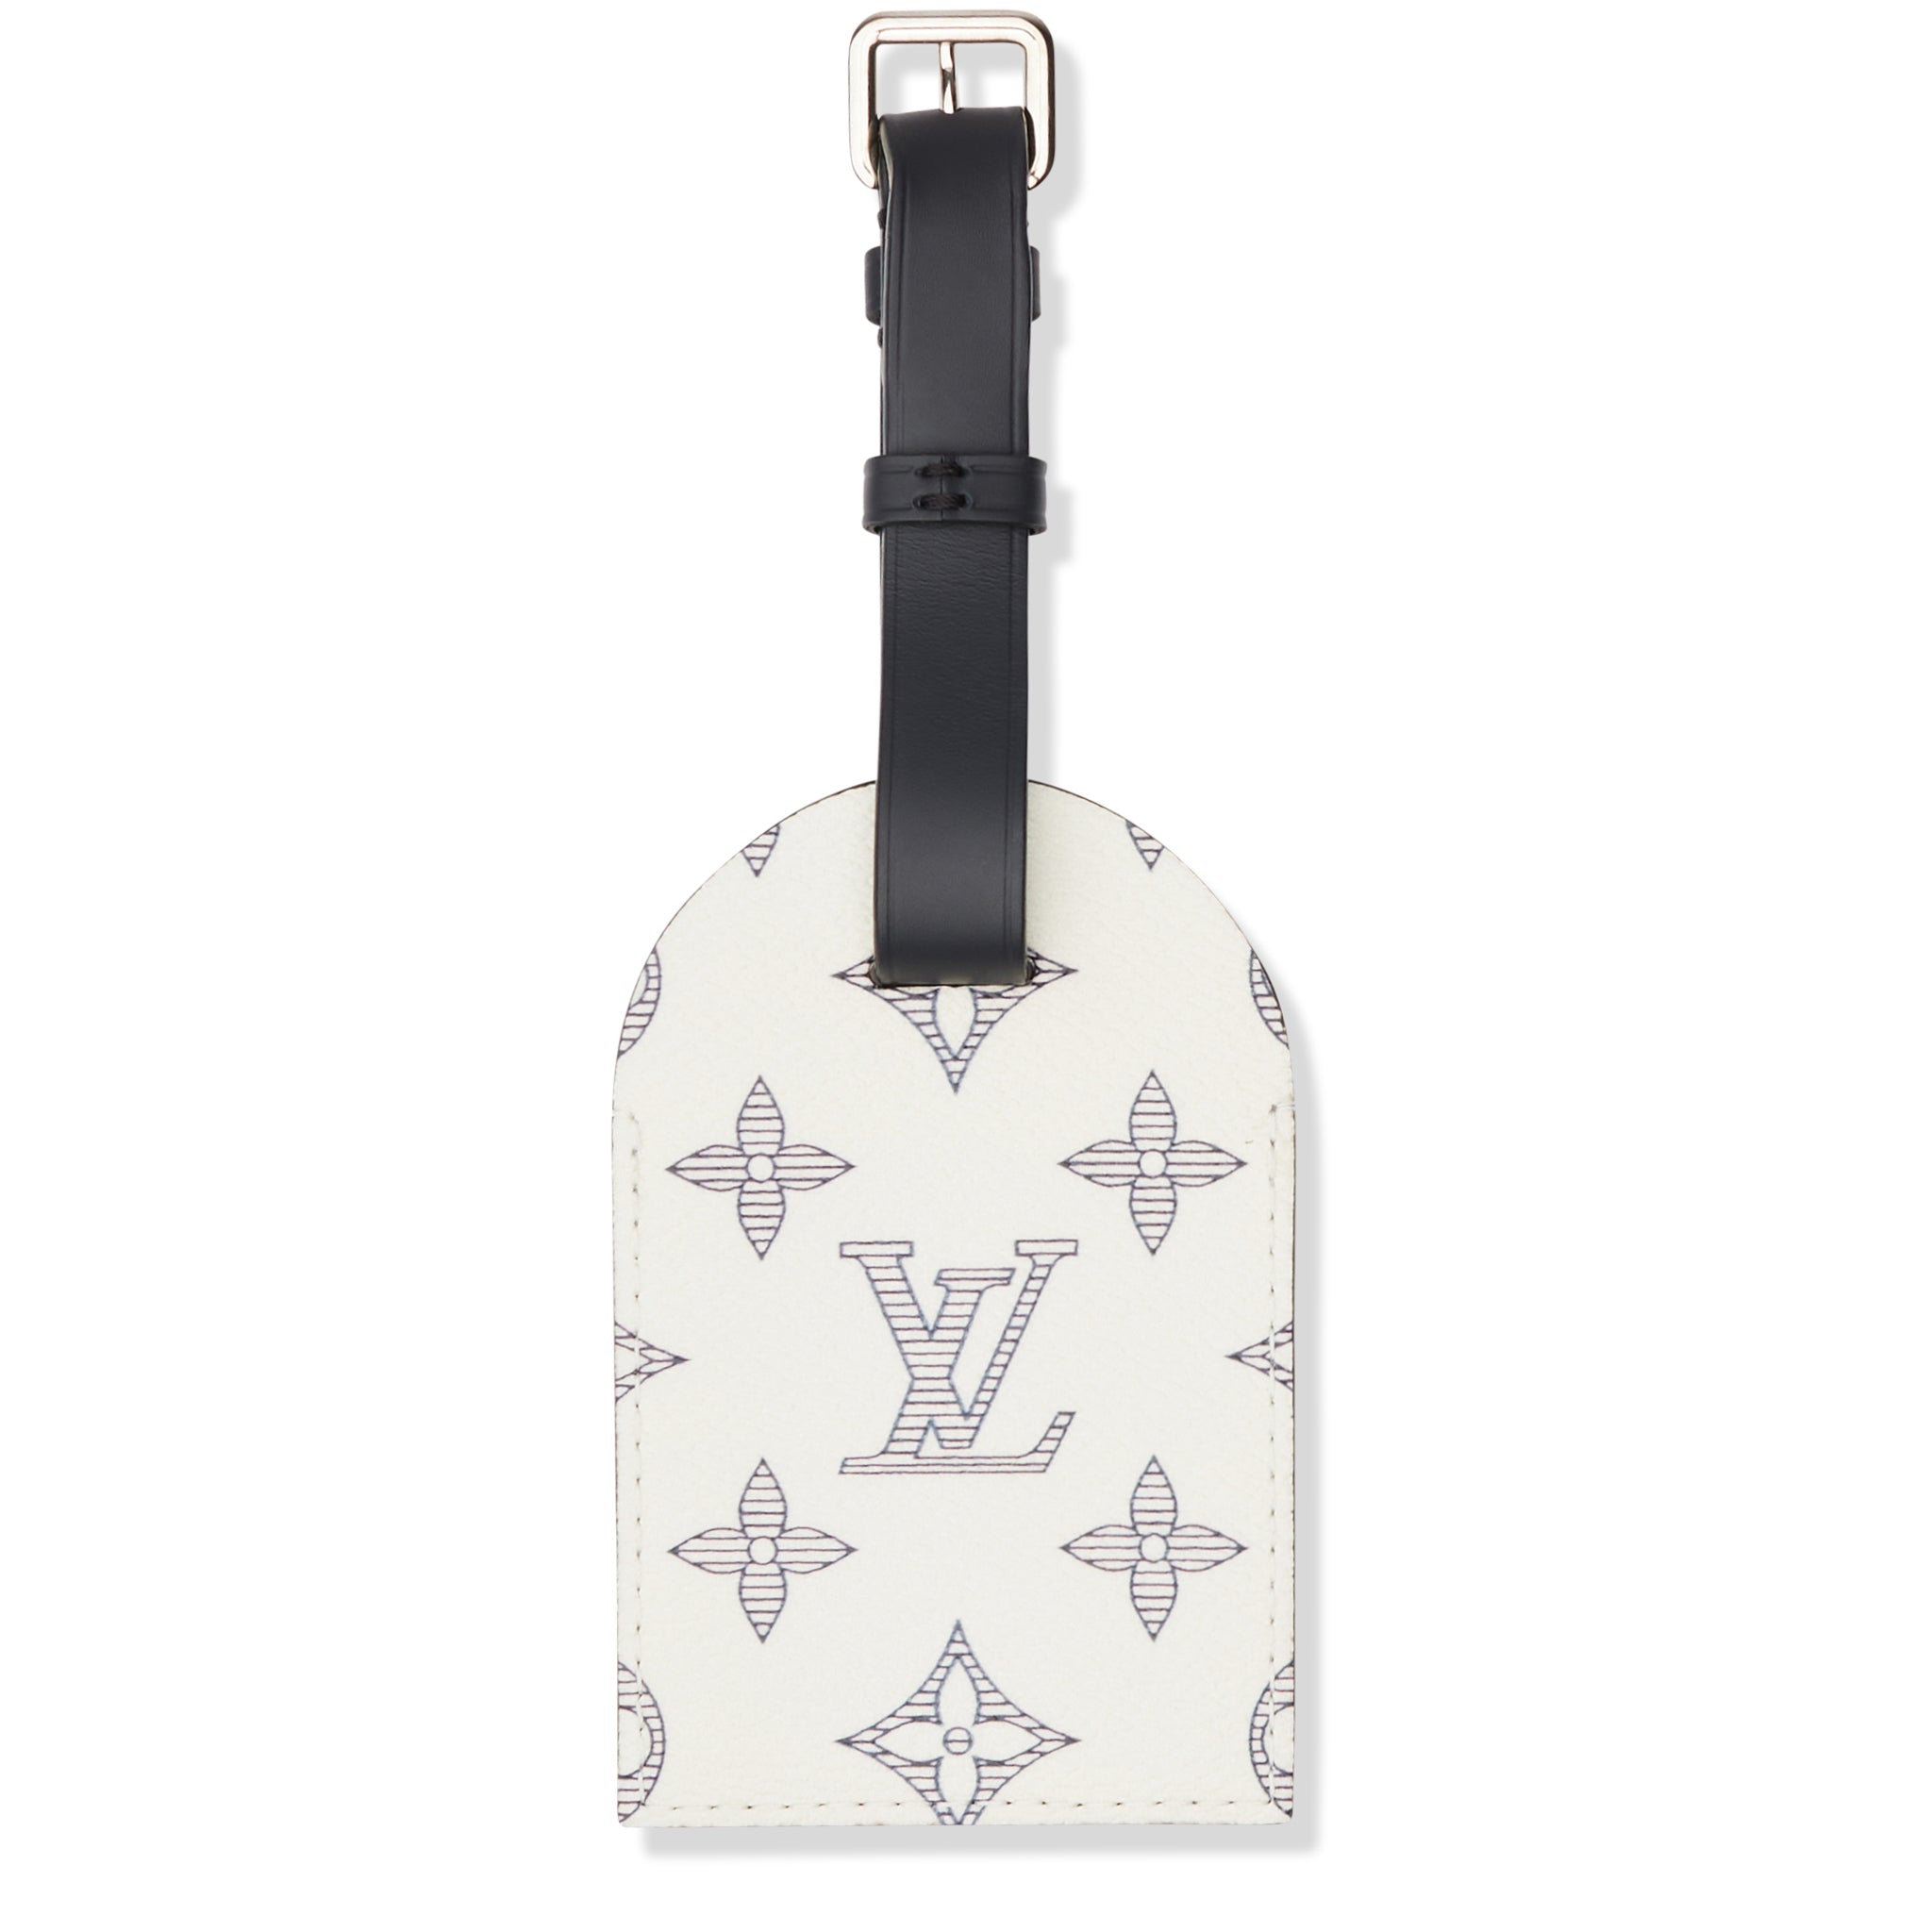 Louis Vuitton - Louis Vuitton messenger bag in damier coated canvas -  Crepslocker